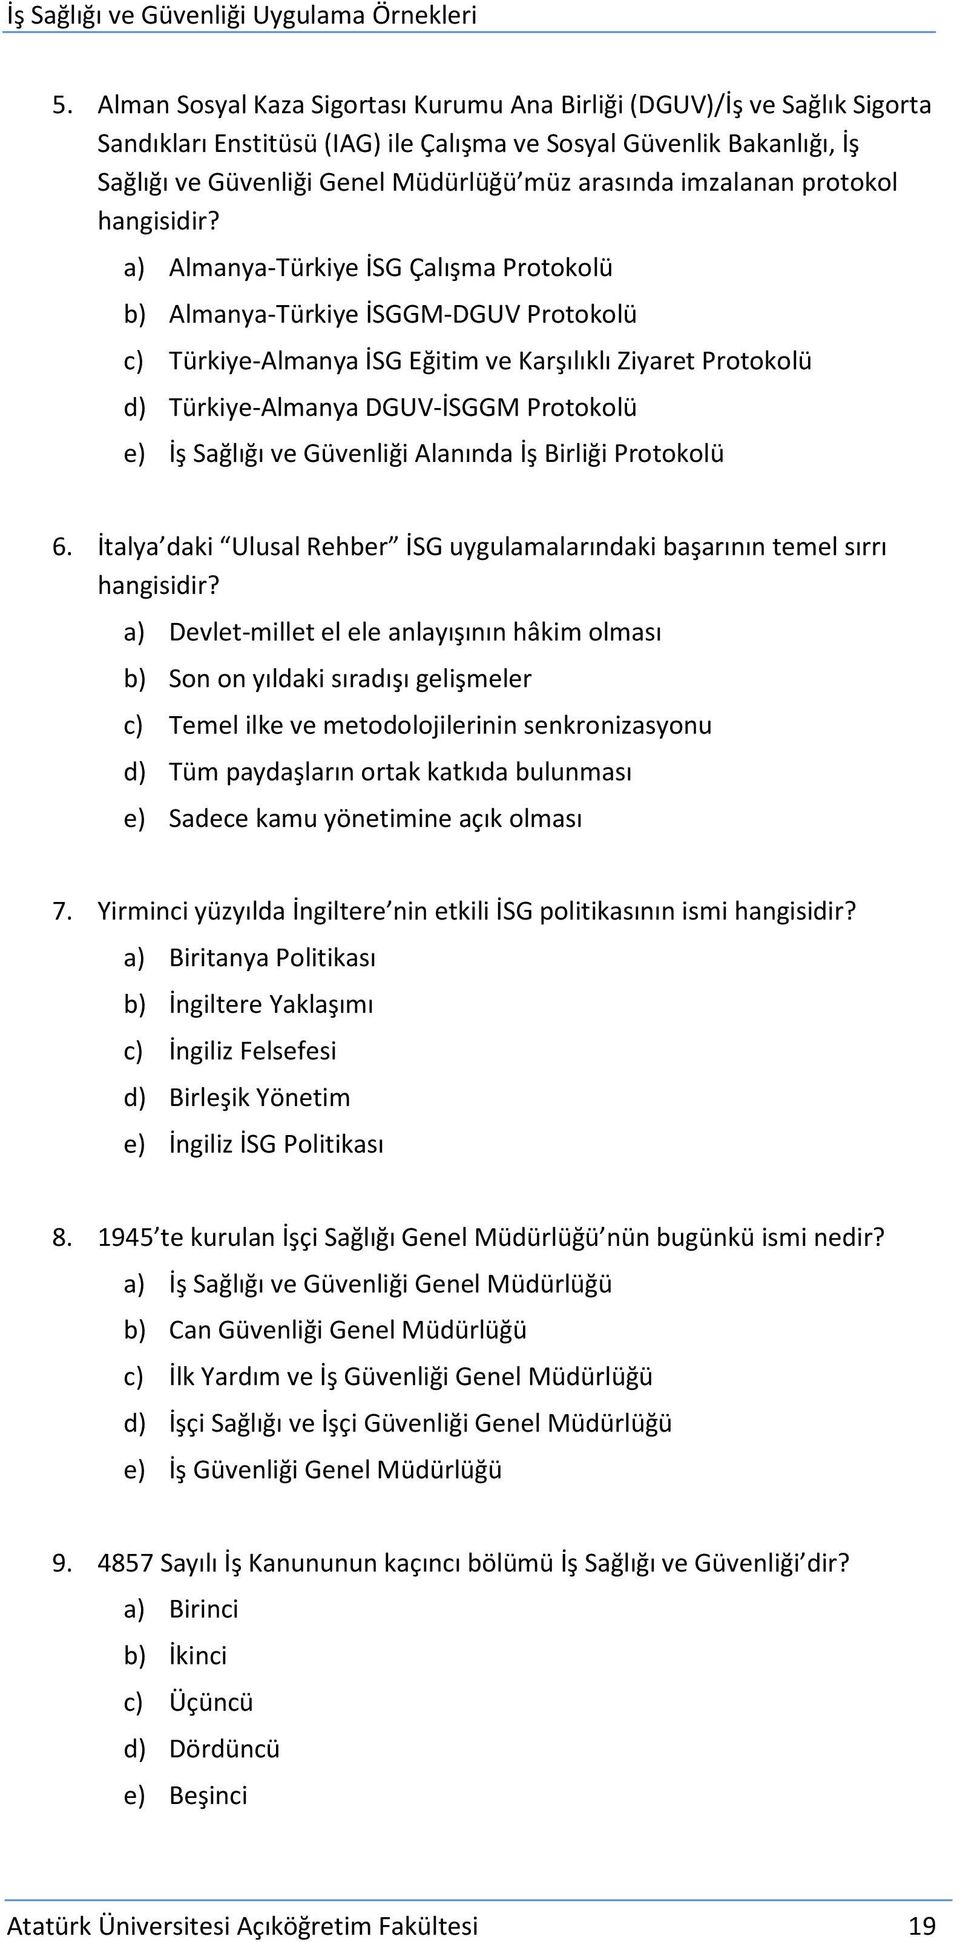 a) Almanya-Türkiye İSG Çalışma Protokolü b) Almanya-Türkiye İSGGM-DGUV Protokolü c) Türkiye-Almanya İSG Eğitim ve Karşılıklı Ziyaret Protokolü d) Türkiye-Almanya DGUV-İSGGM Protokolü e) İş Sağlığı ve